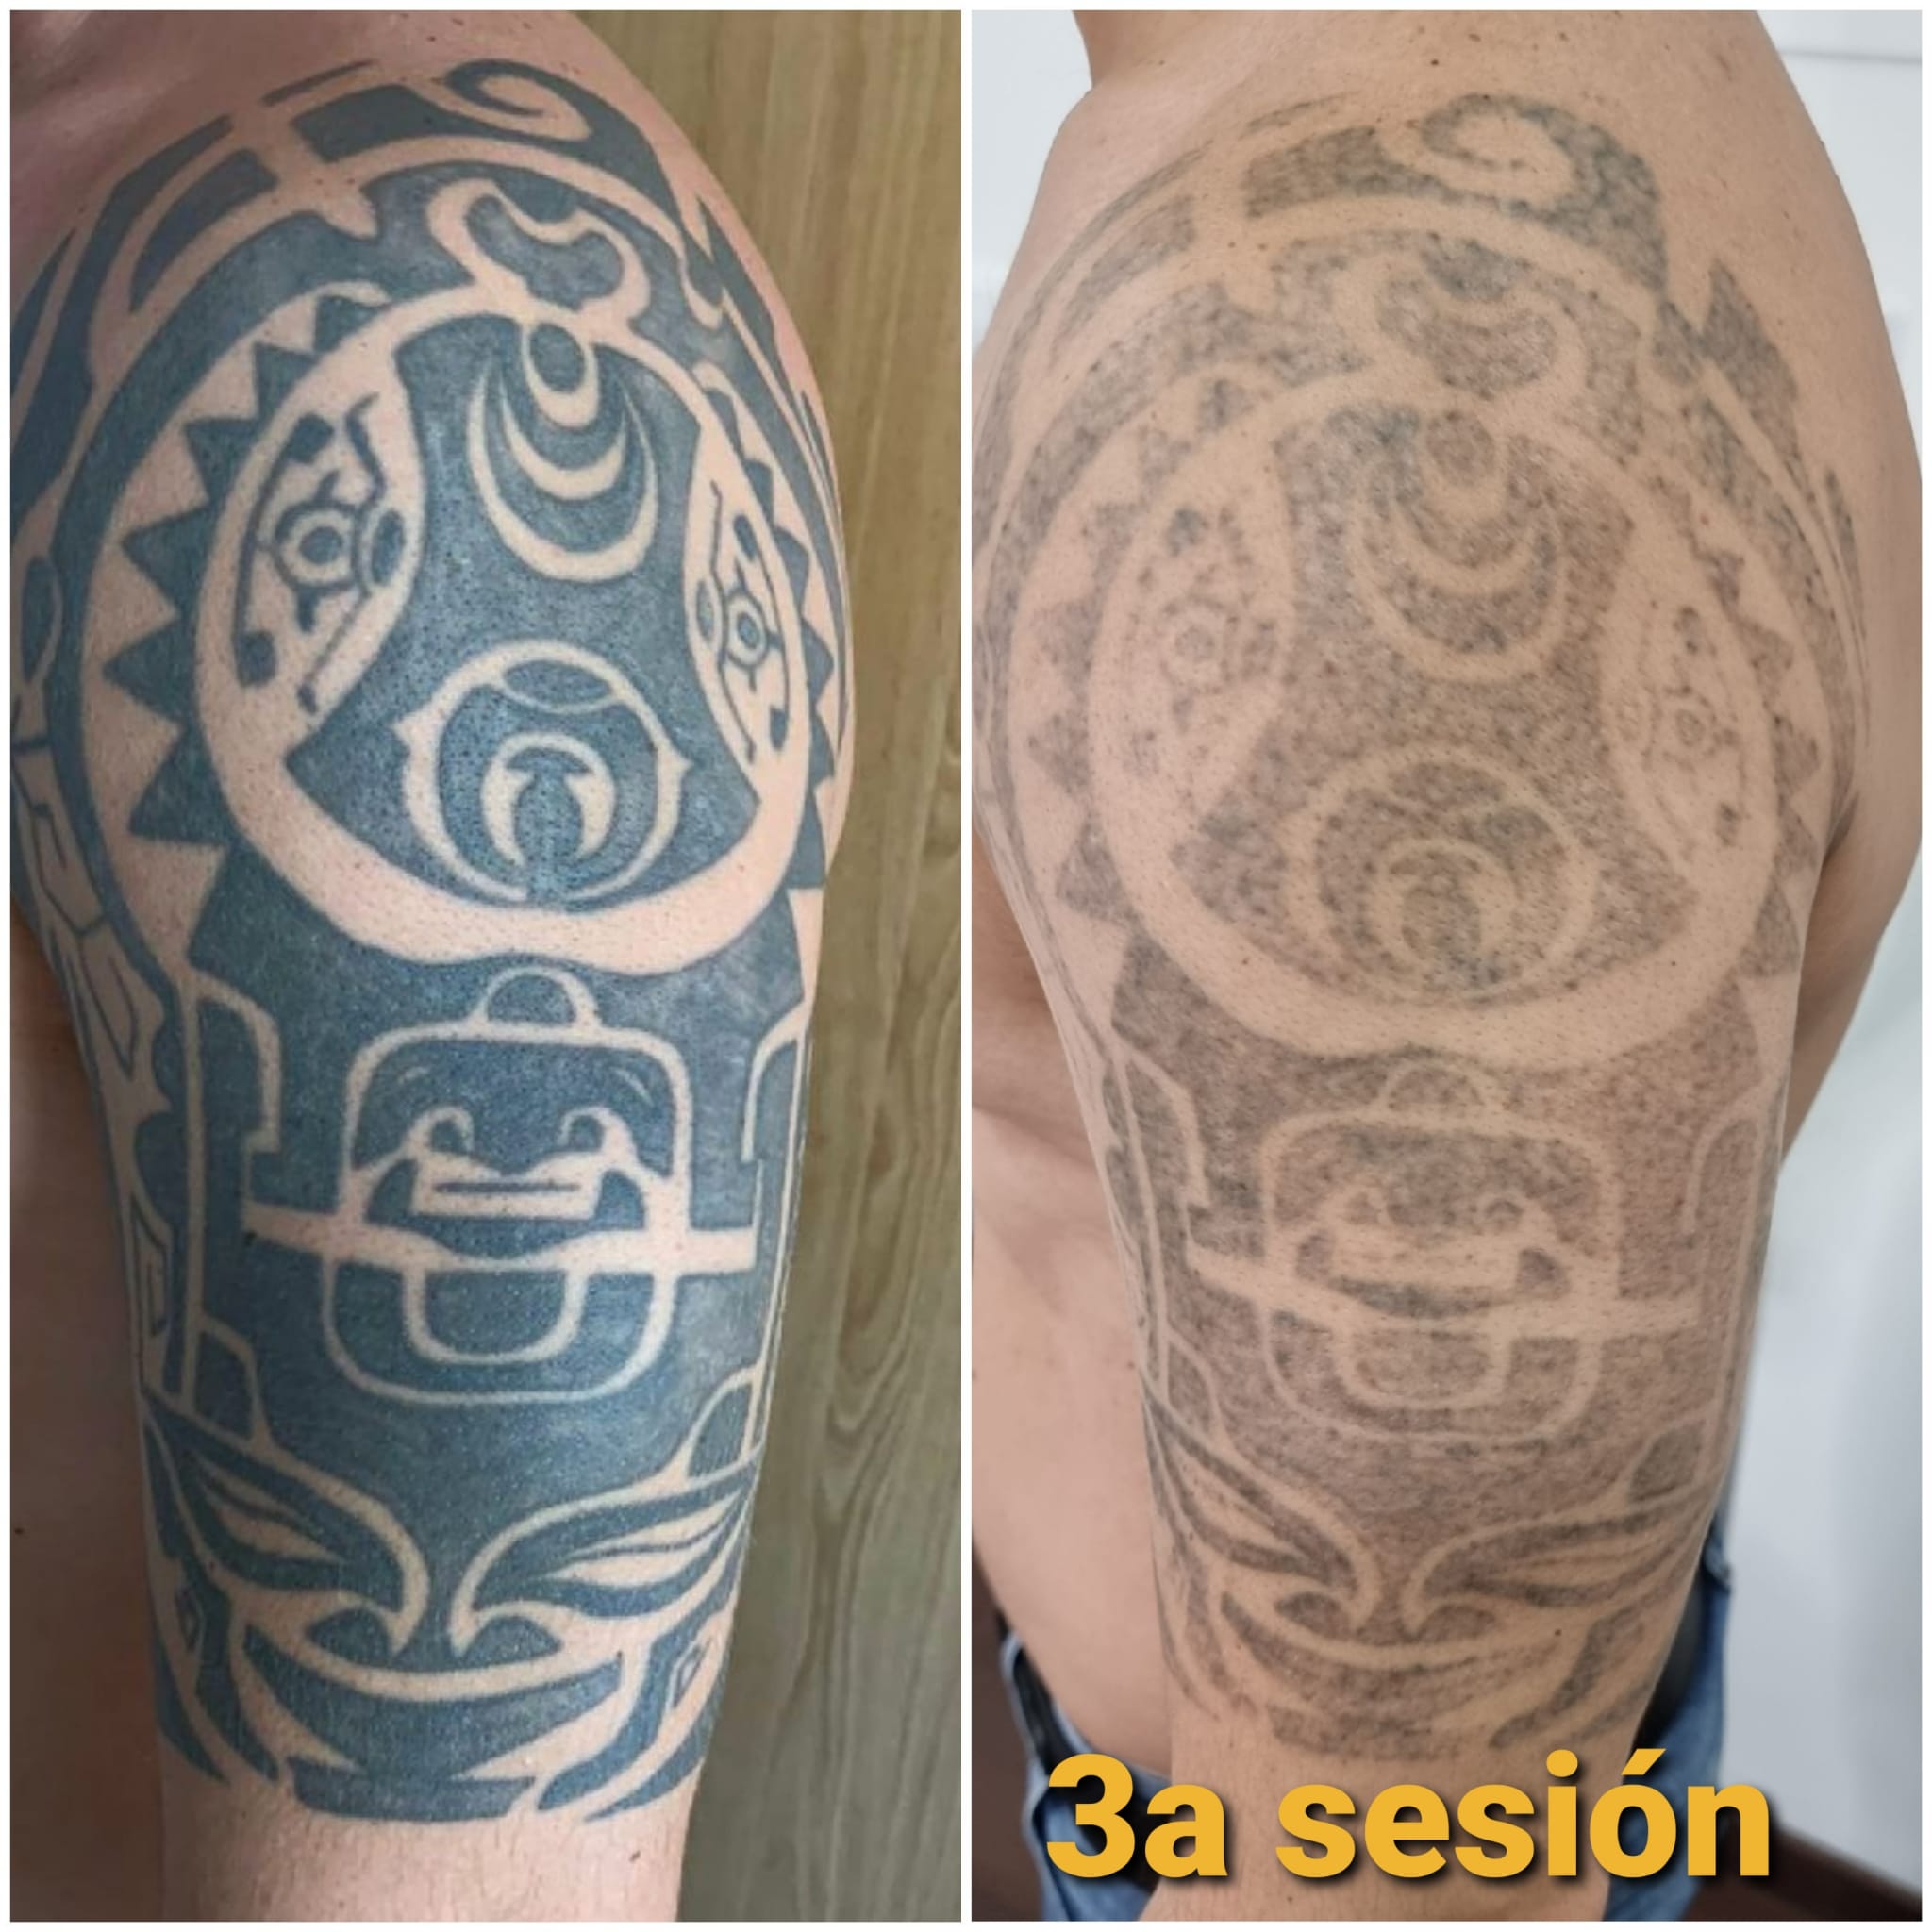 ᐅ Eliminación de tatuajes Antes y Después de una Sesión Láser